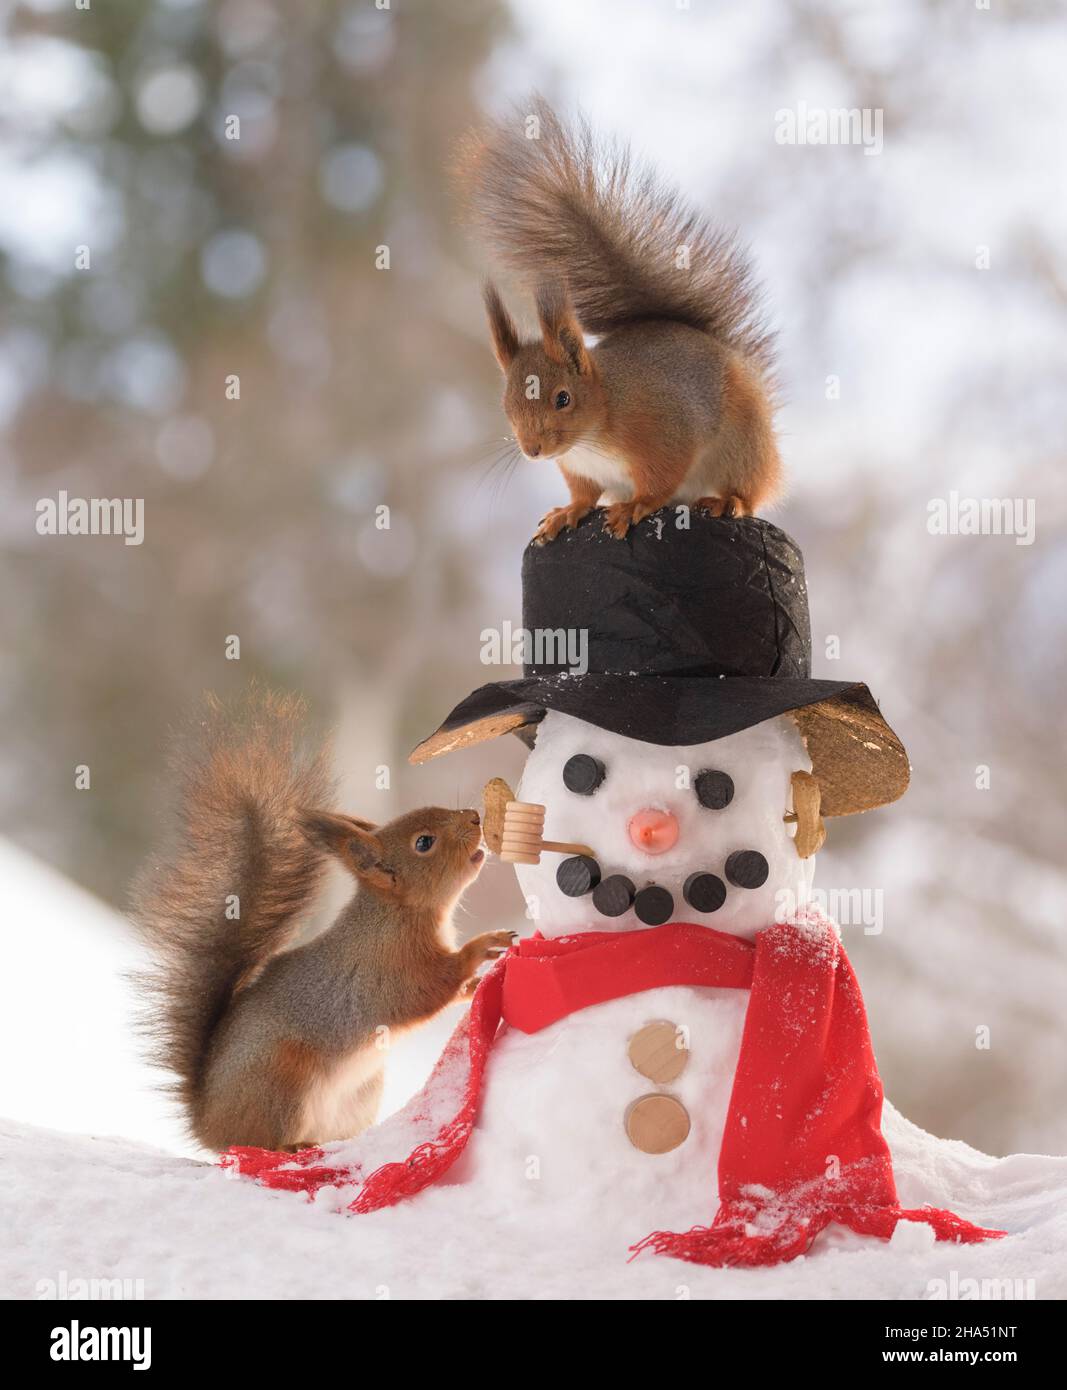 las ardillas rojas están de pie junto con un muñeco de nieve Foto de stock